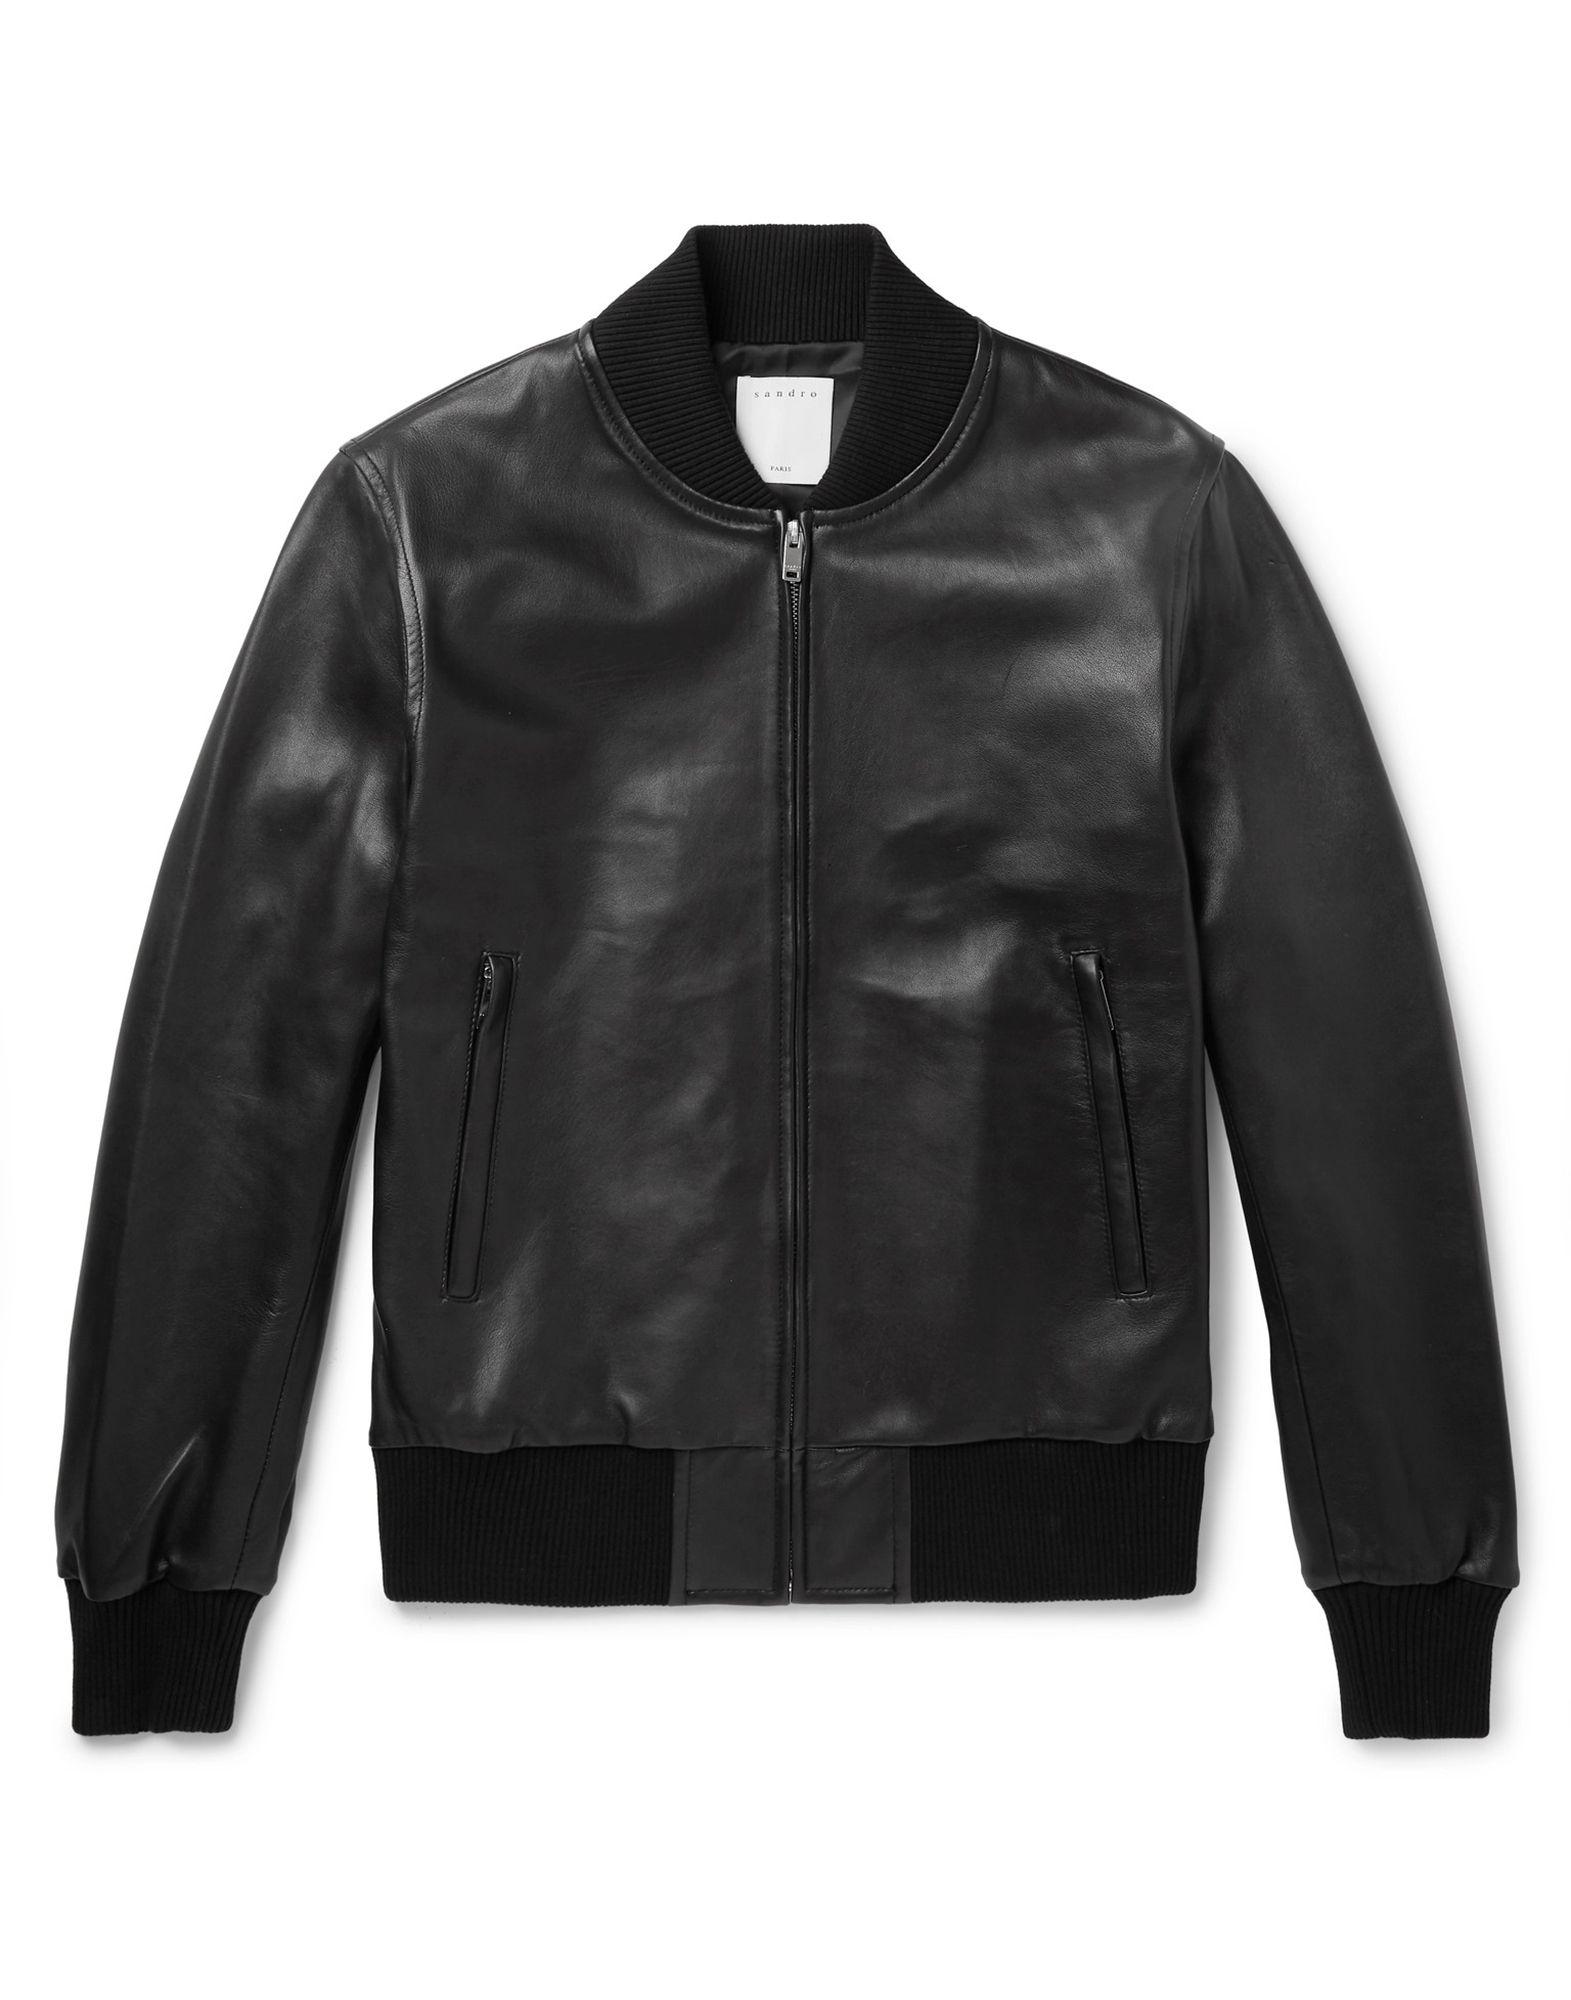 Sandro Leather Bomber Jacket in Black for Men | Lyst